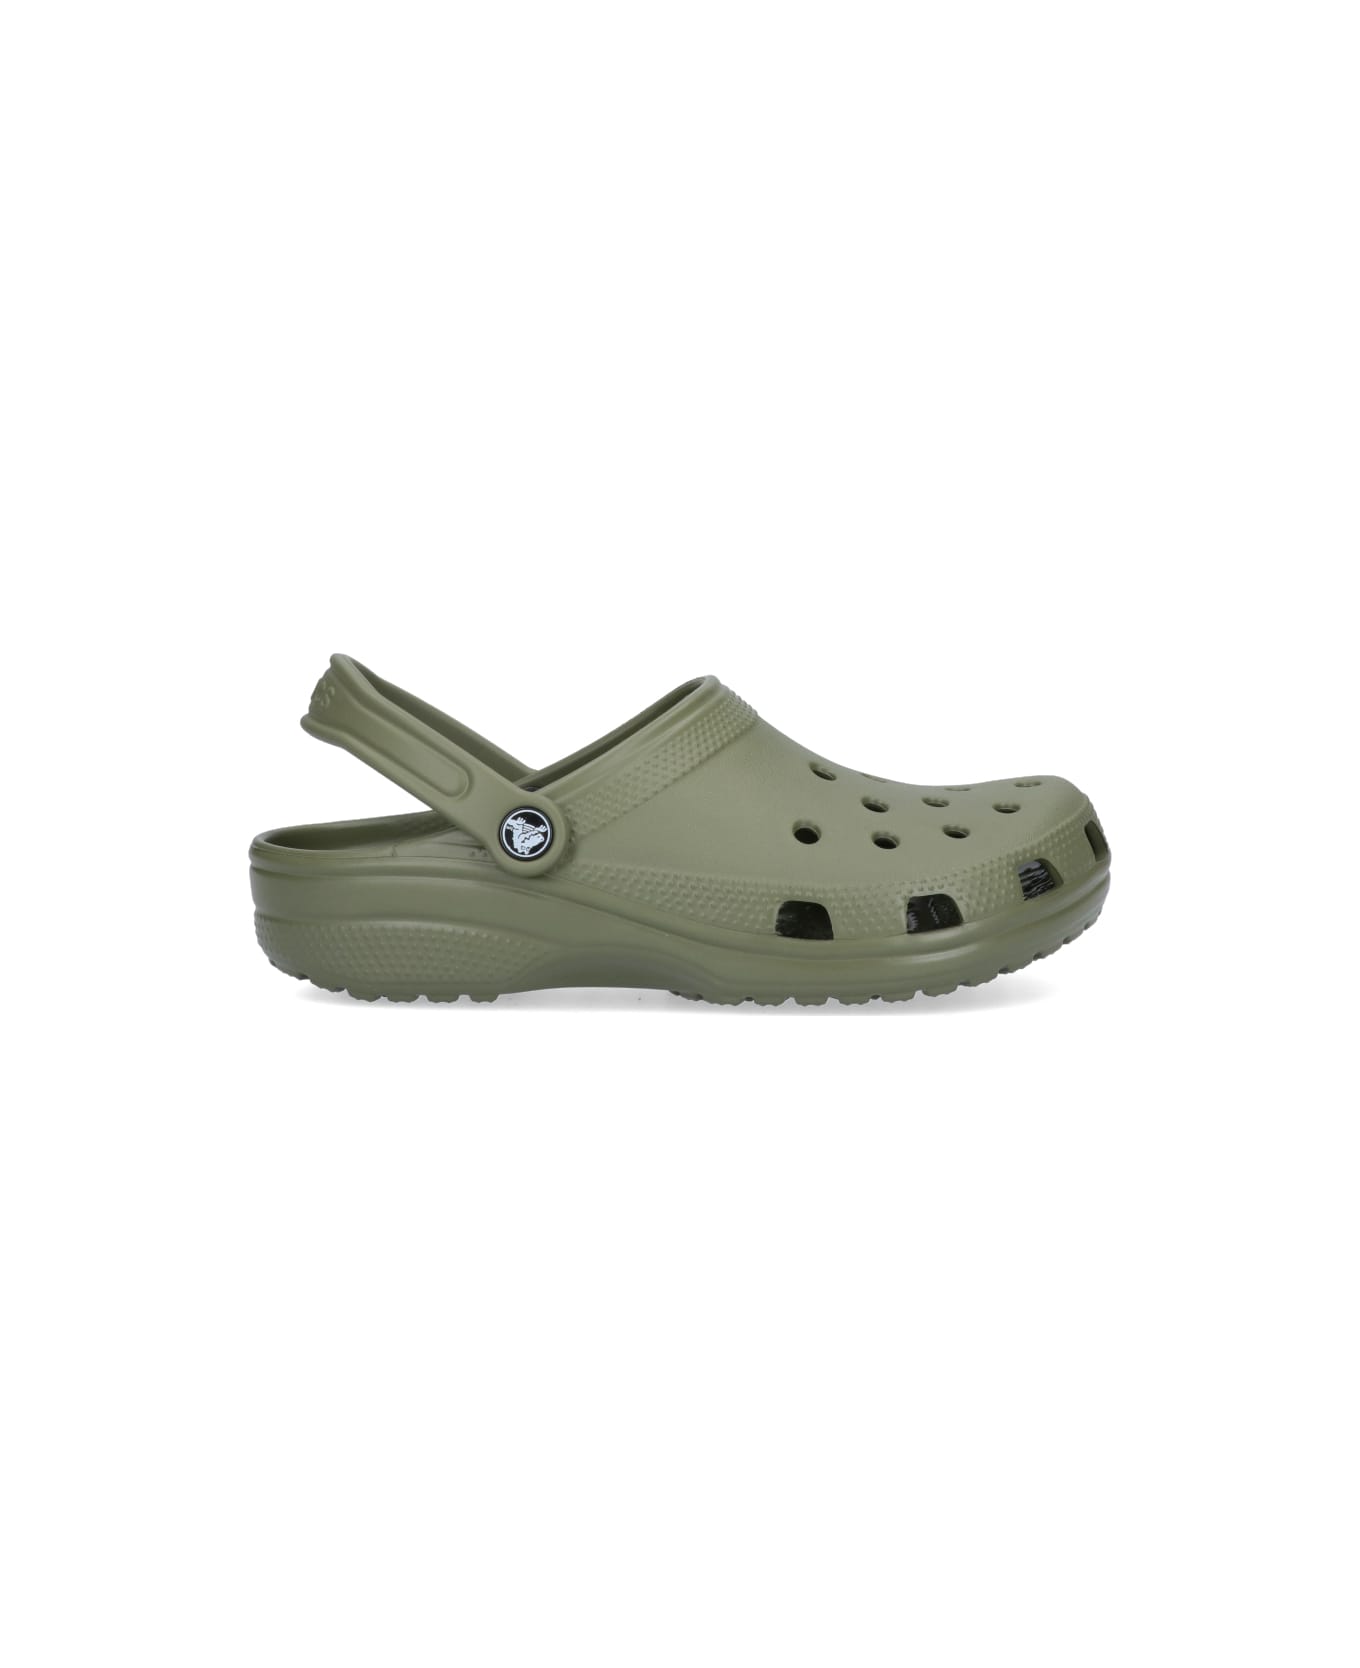 Crocs Flat Shoes - Green